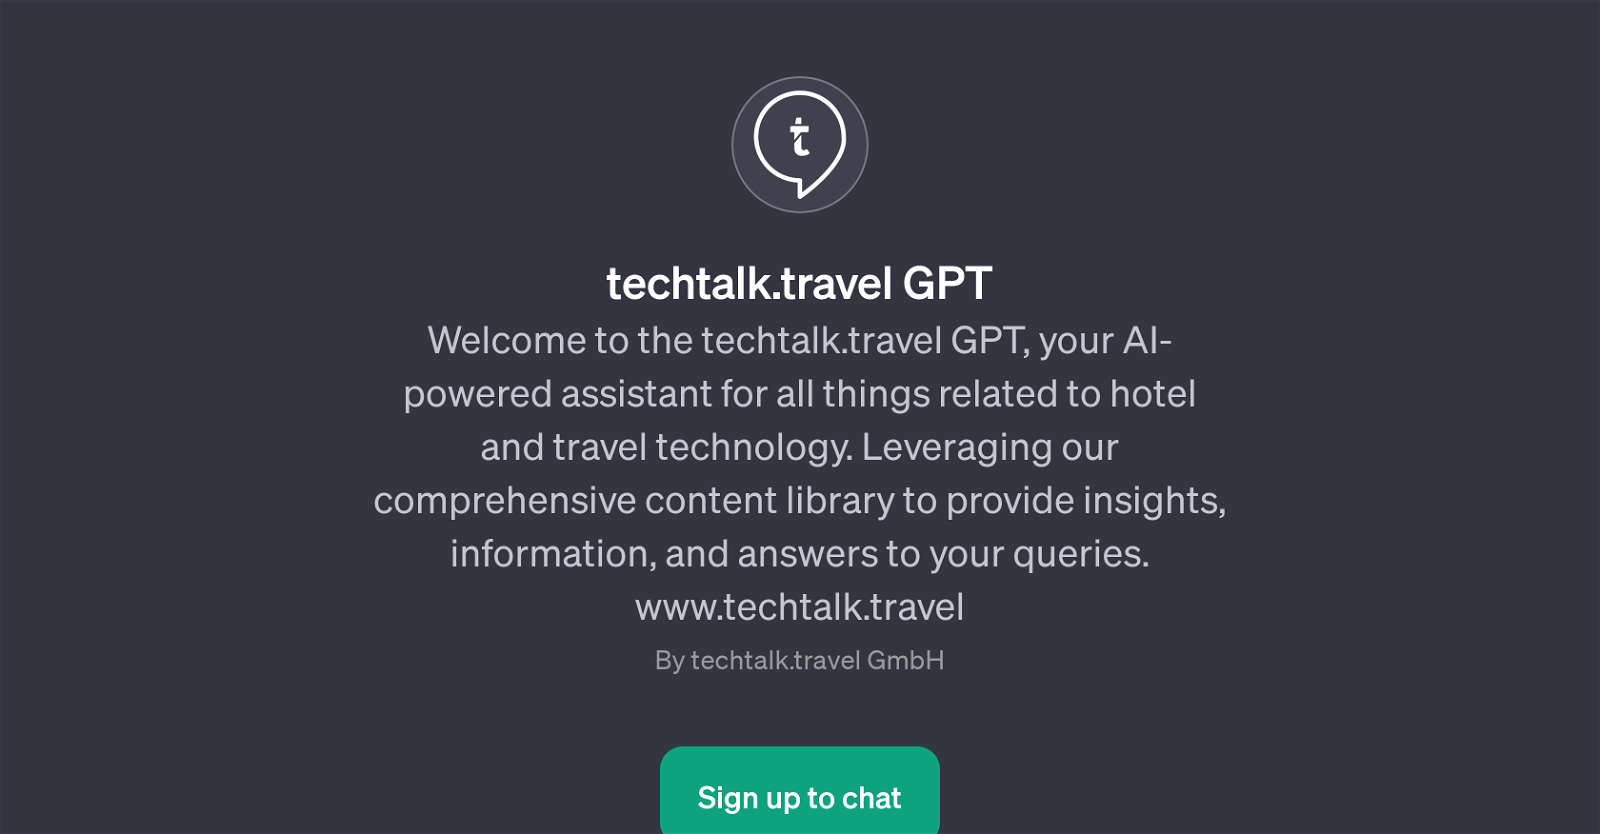 techtalk.travel GPT website